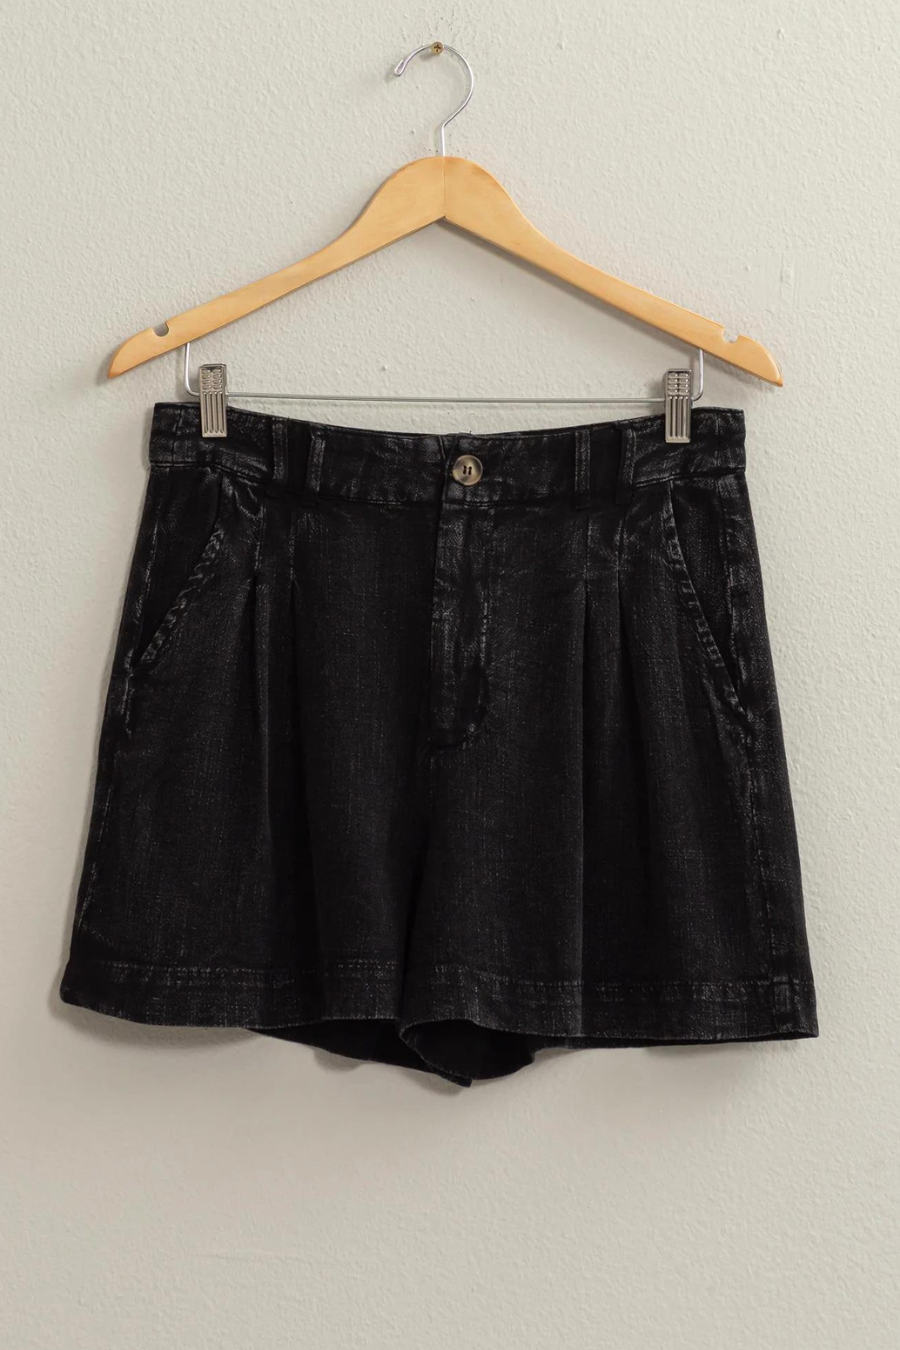 full view of black linen shorts of hanger 